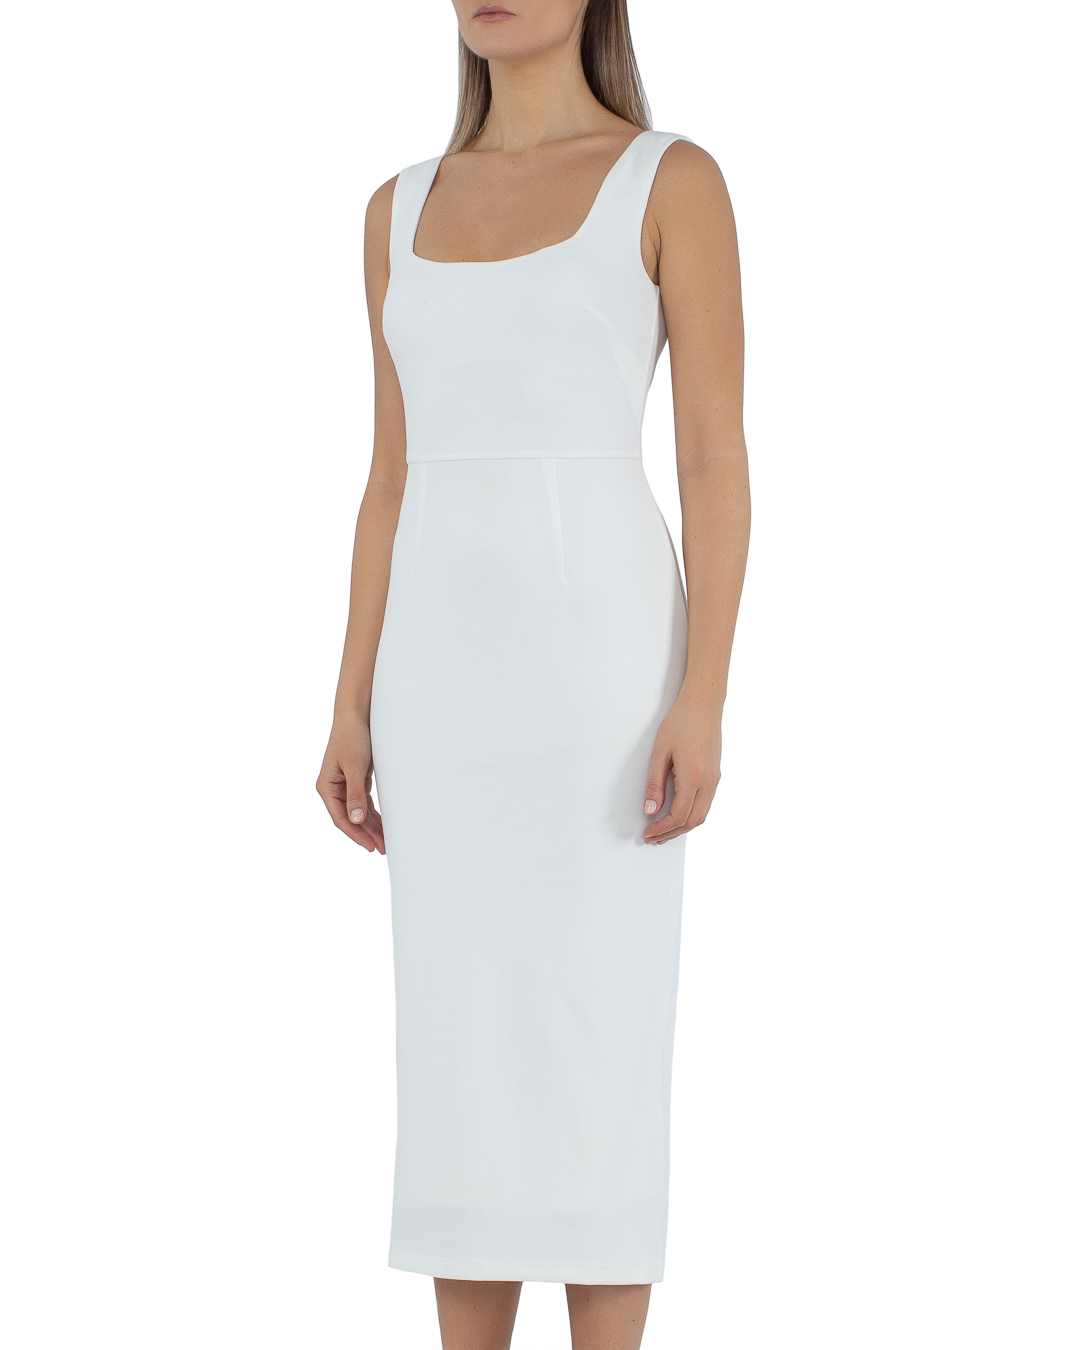 платье PASDUCHAS PD101200 белый 6, размер 6 - фото 3